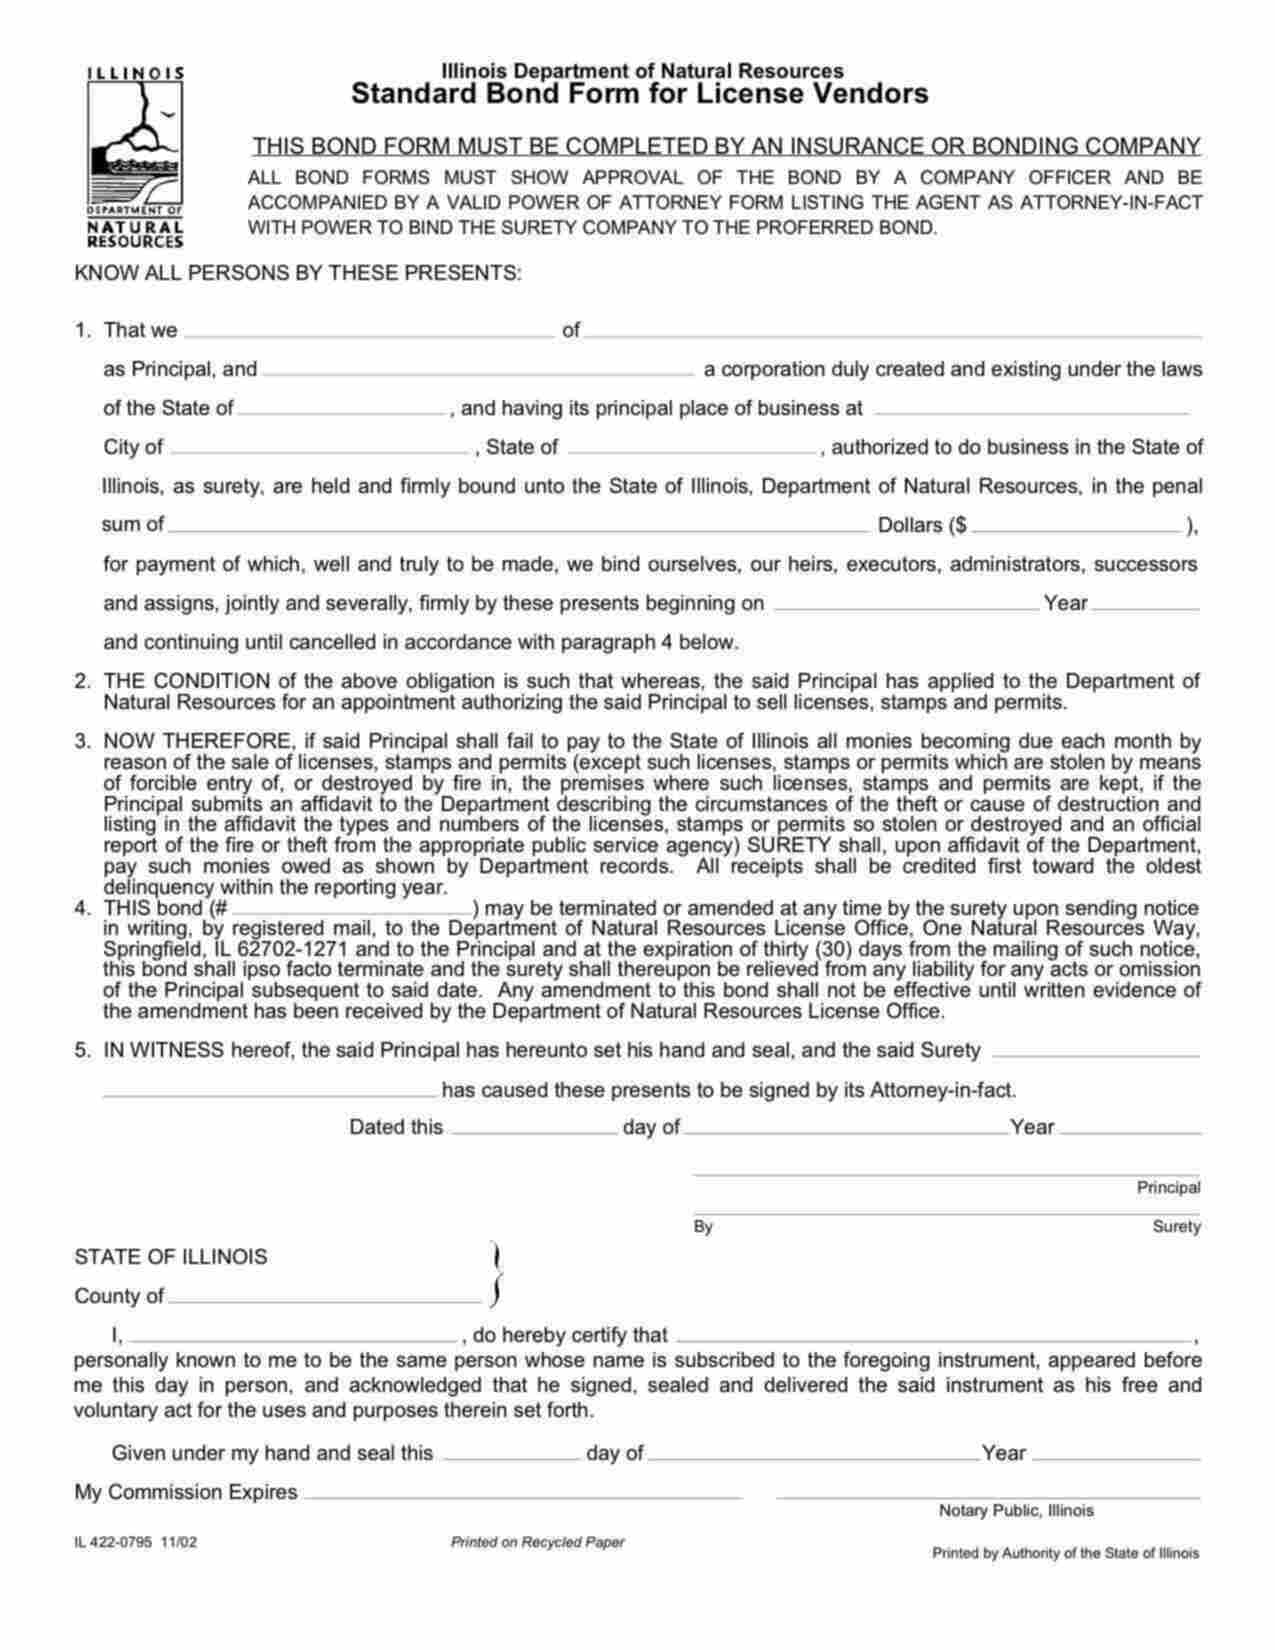 Illinois Hunting/Fishing License Vendors Bond Form